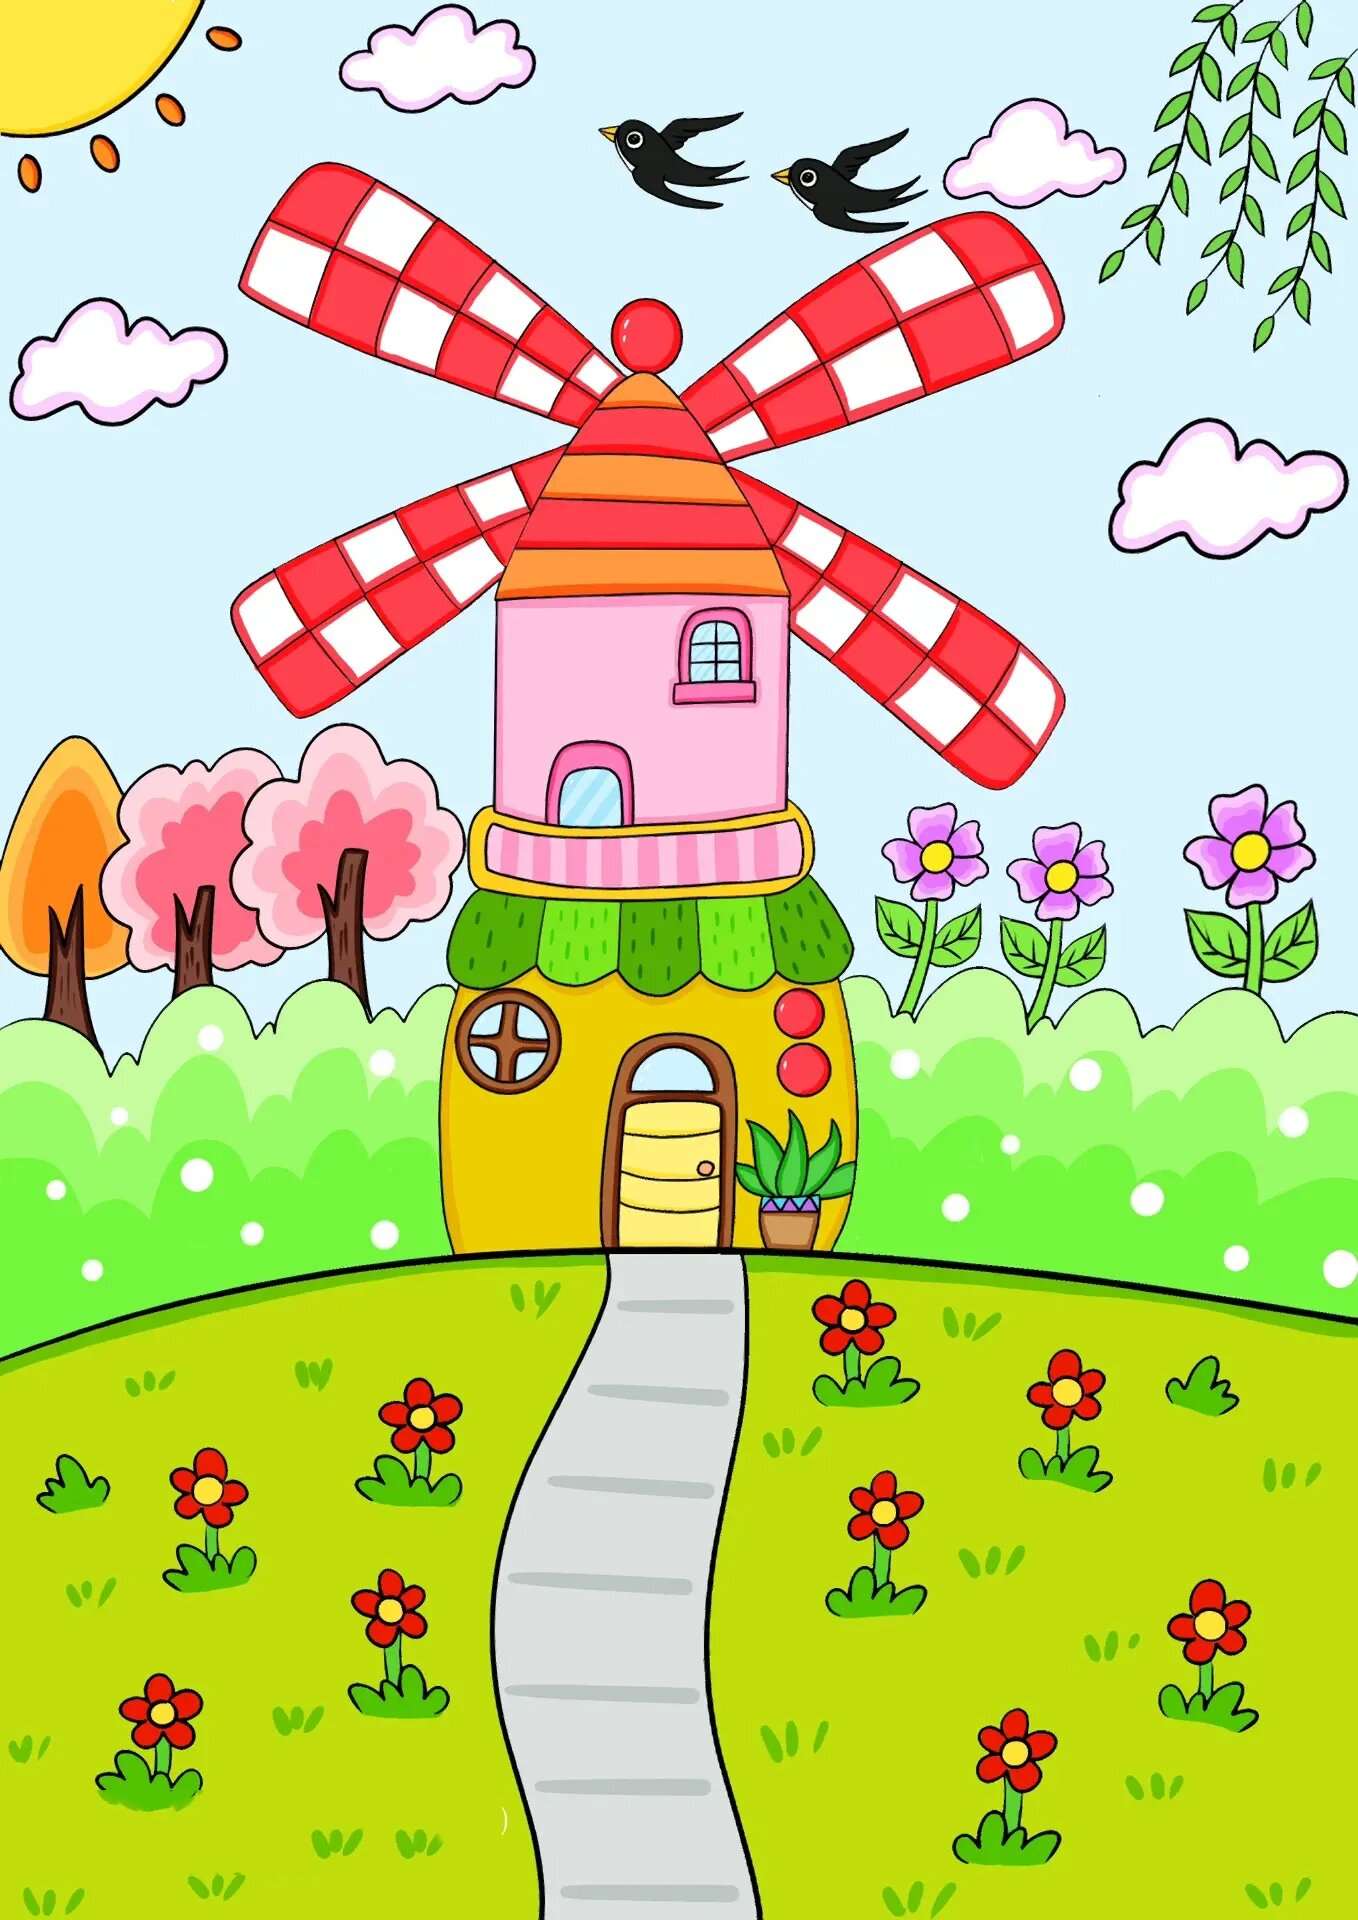 风车儿童画 风车房子卡通画 房子幼儿园画